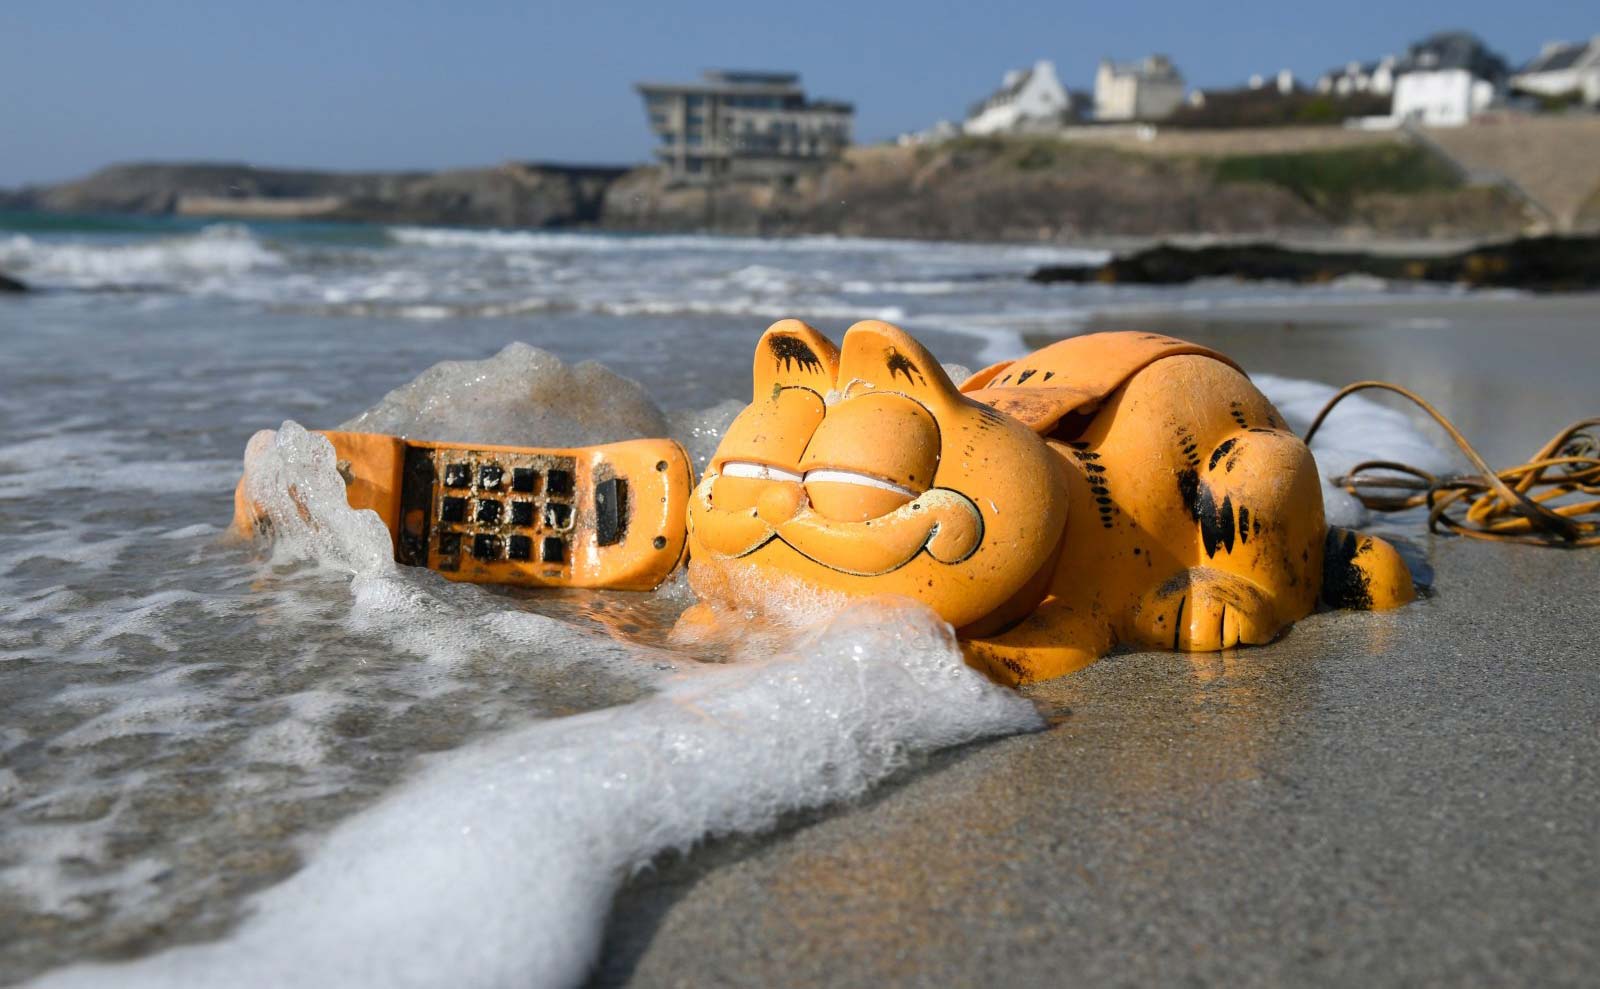 Sau 35 năm liên tục trôi dạt vào bãi biển, cuối cùng bí ẩn chiếc điện thoại Garfield đã được hé lộ